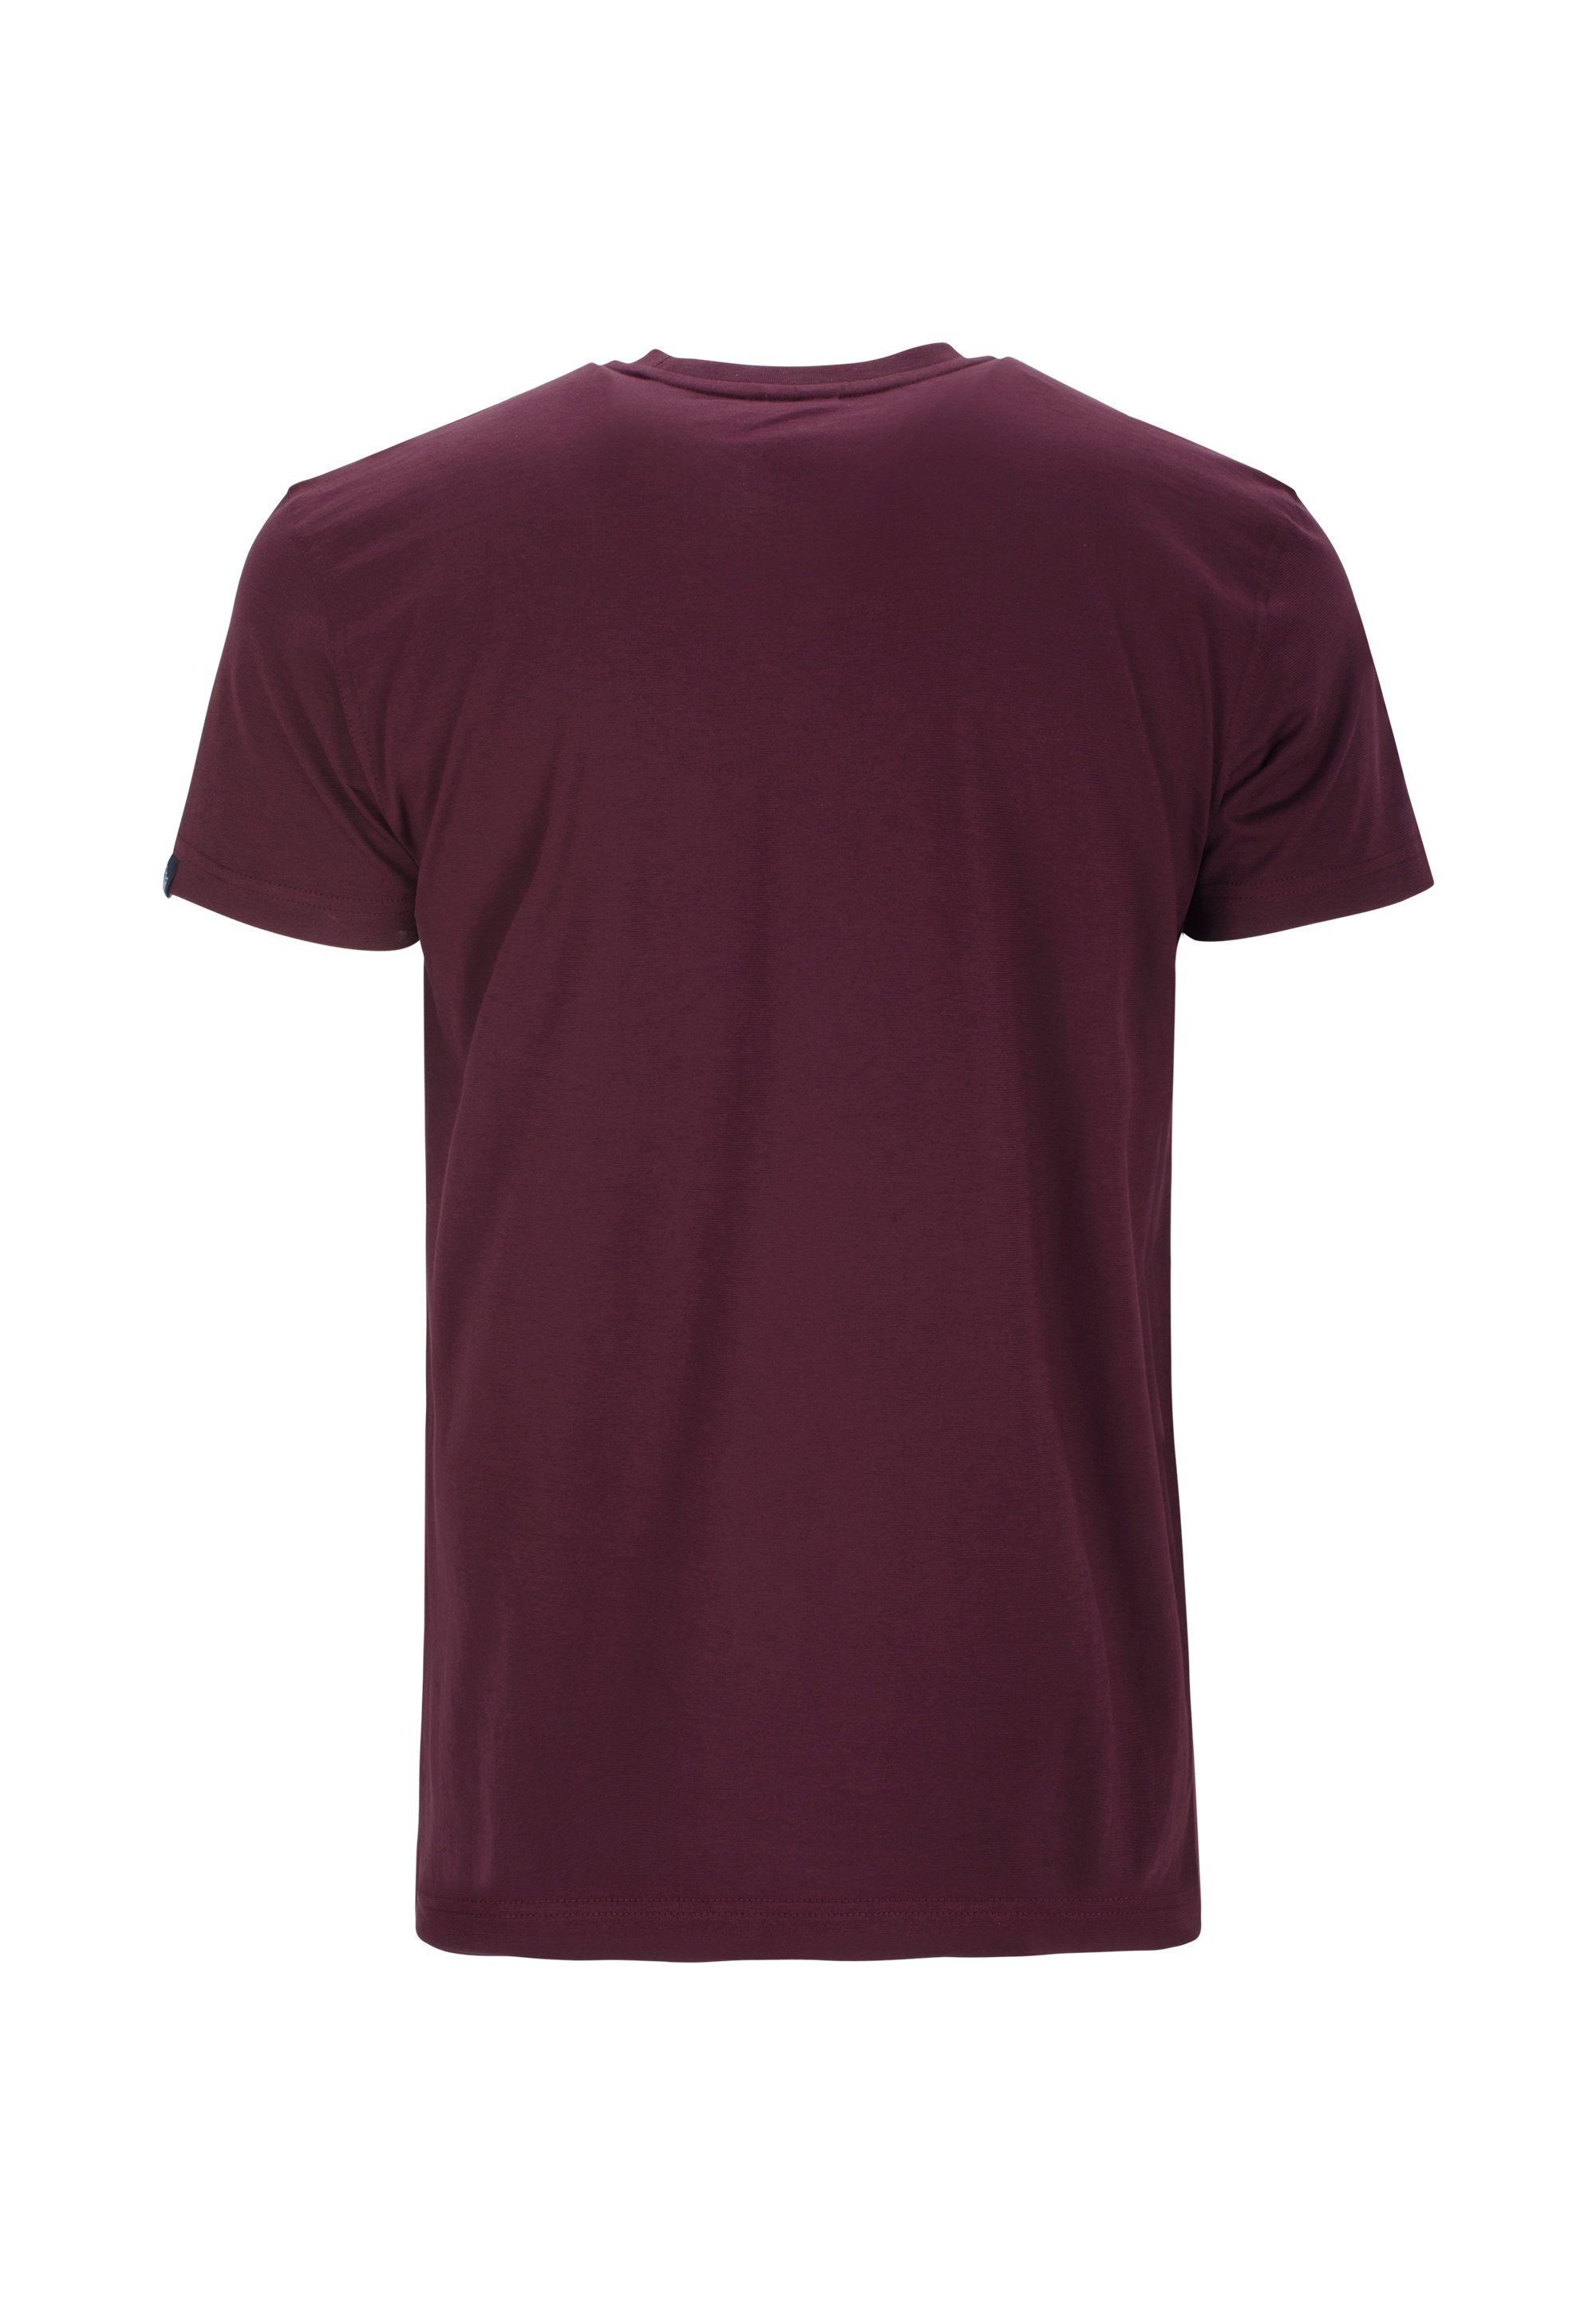 AHORN SPORTSWEAR im Basic-Look T-Shirt klassischen rot